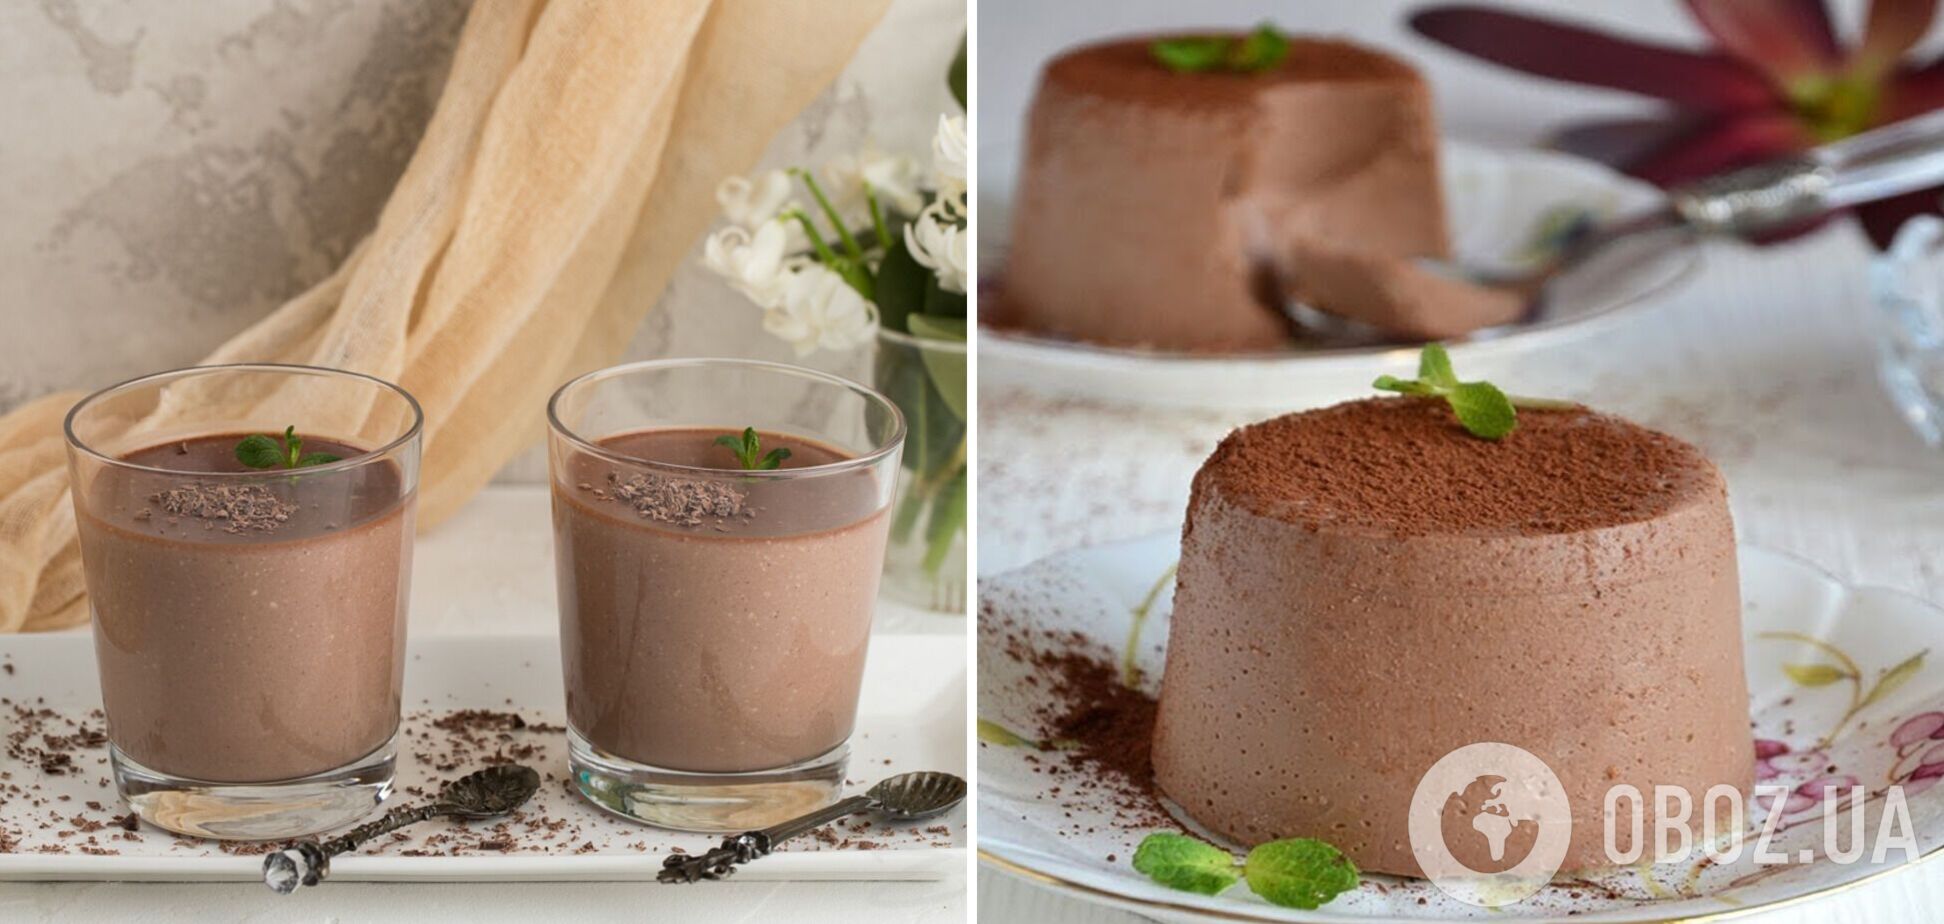 Шоколадный десерт без выпечки всего за 5 минут: элементарное приготовление